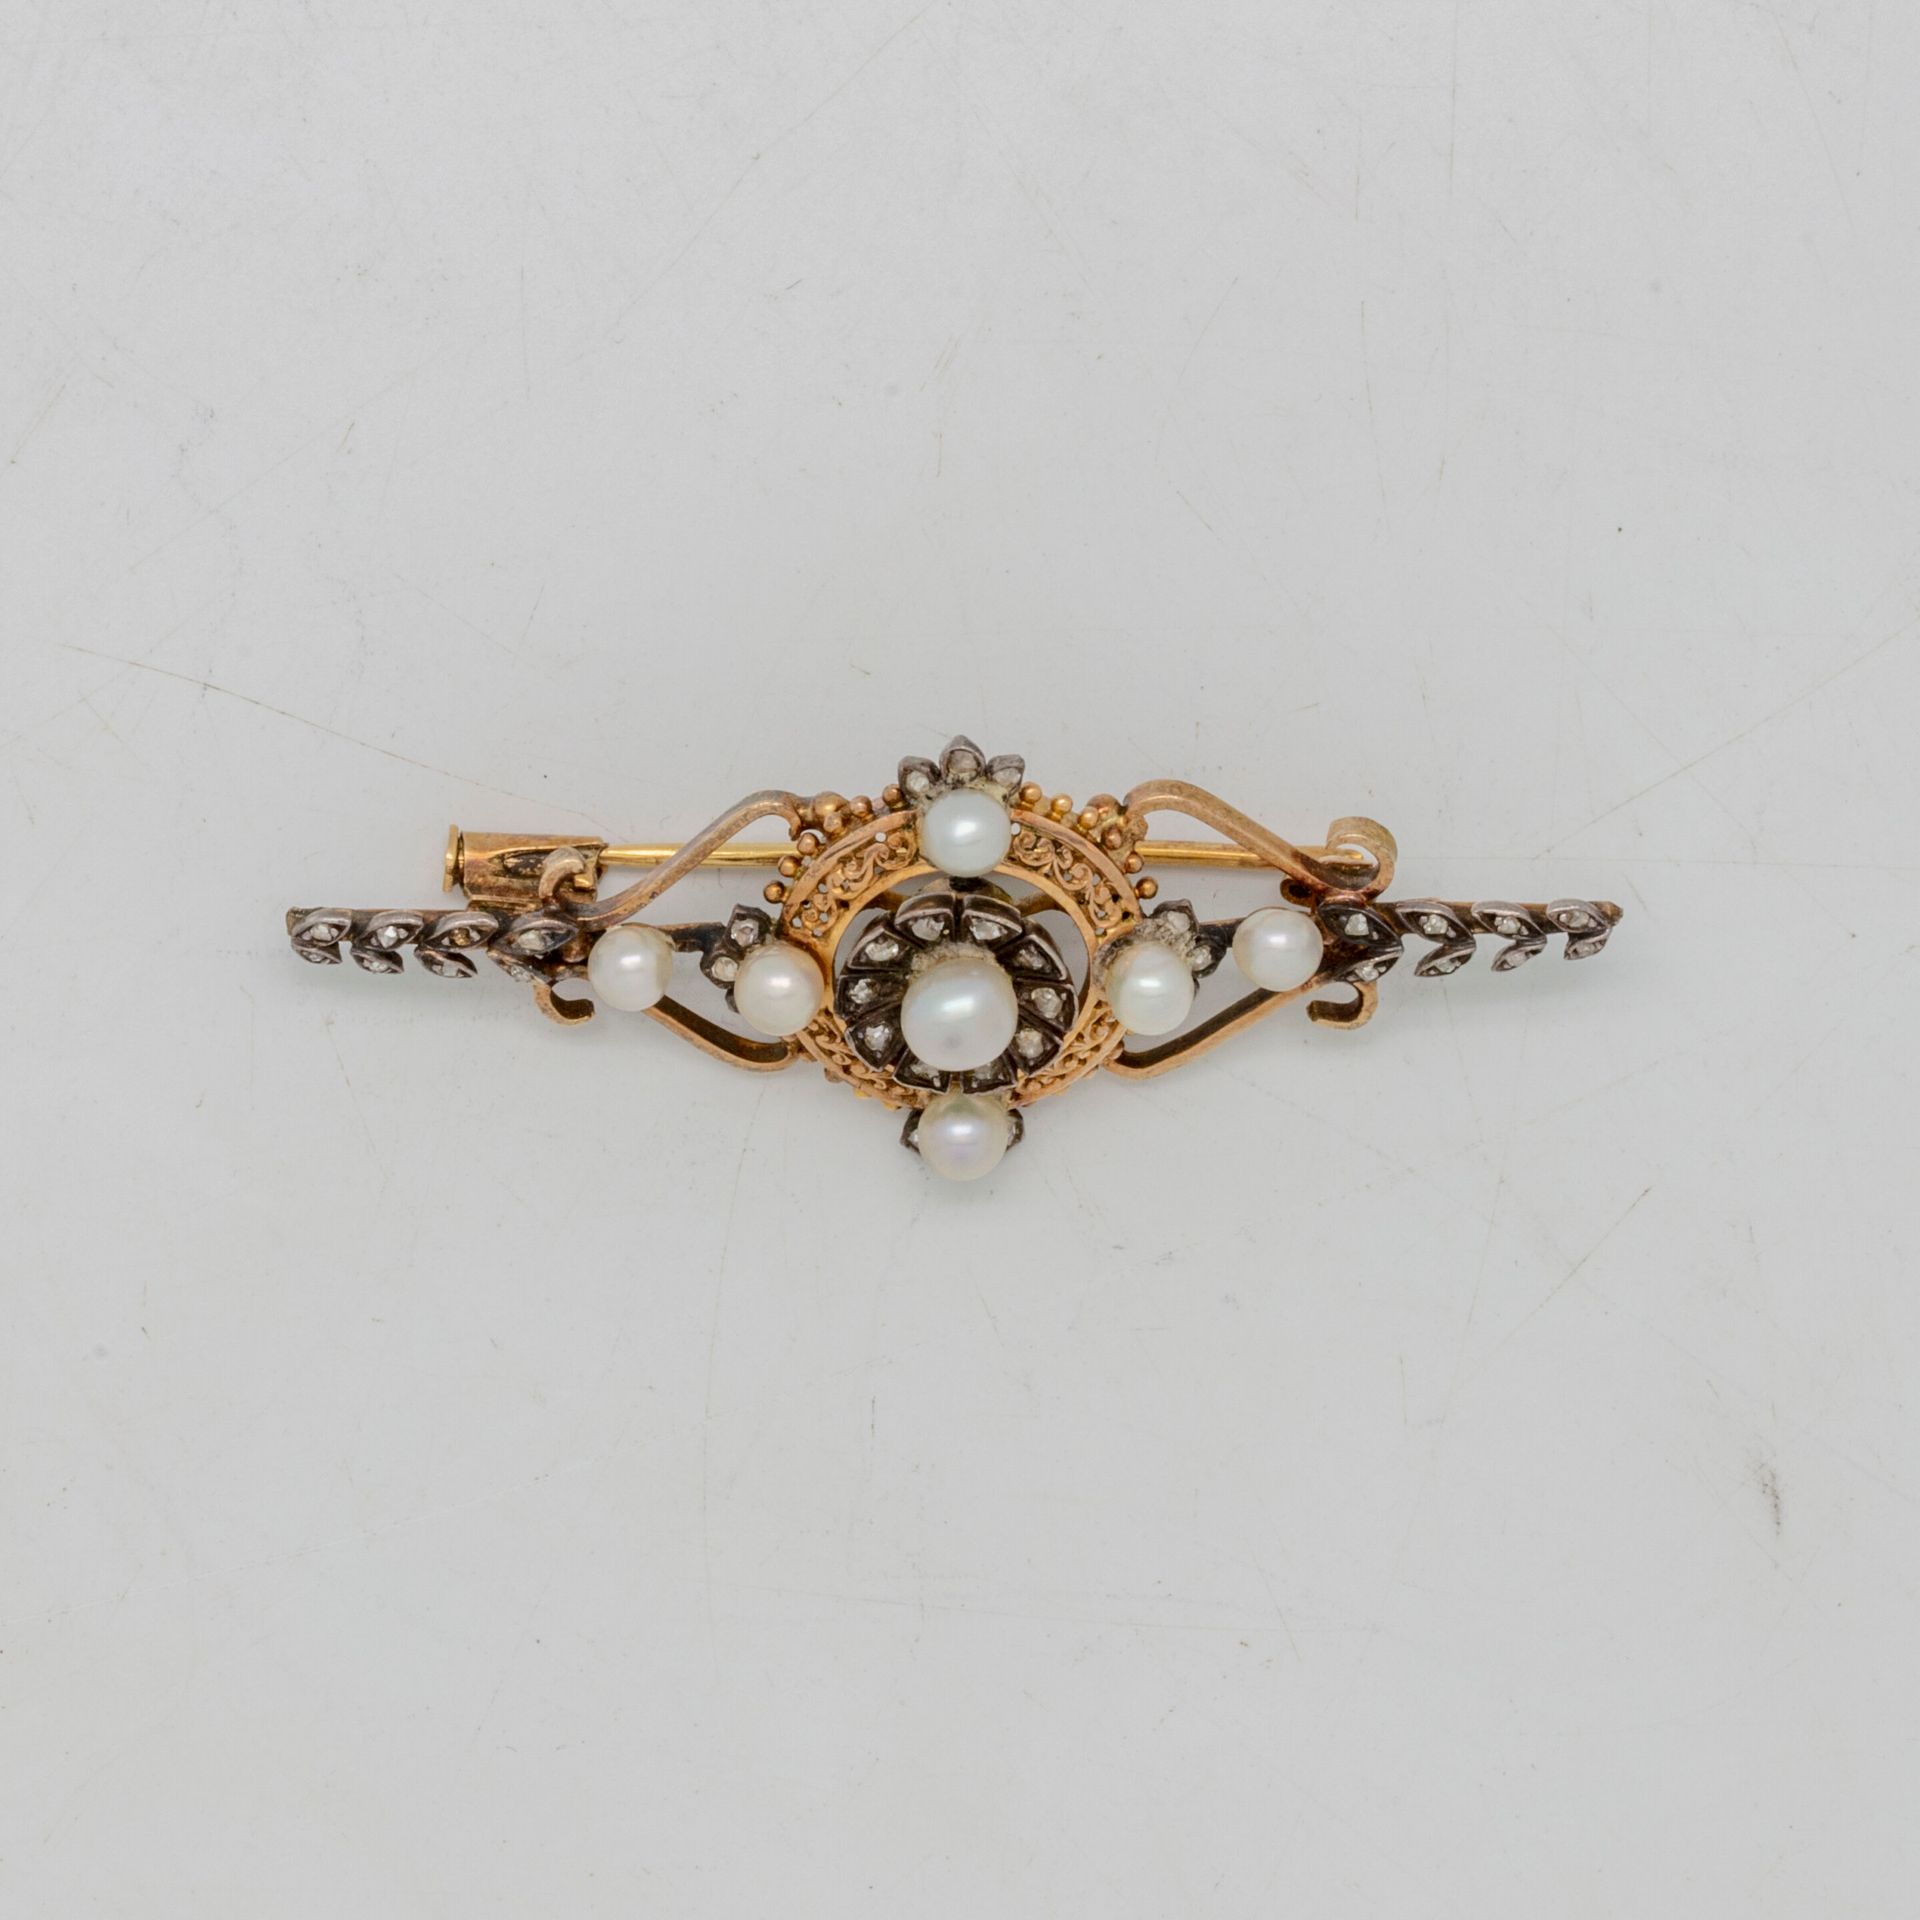 Null 镂空黄金胸针，中央图案上点缀着可能是精美的珍珠和小型玫瑰切割钻石

拿破仑三世时期

毛重：6.5克。